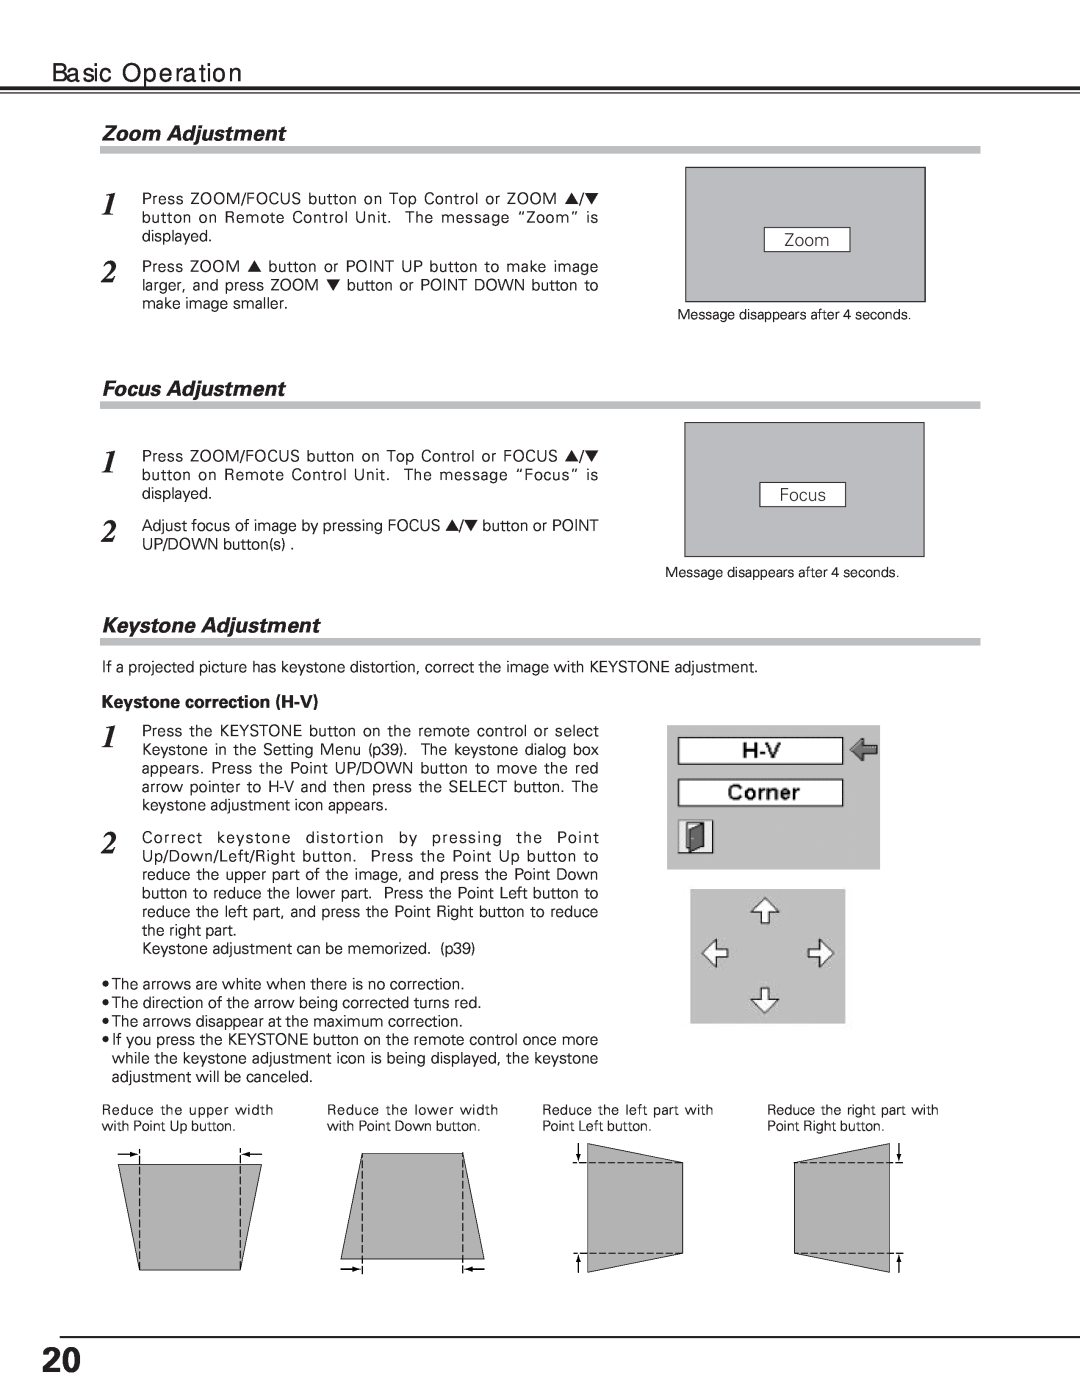 Eiki LC-XE10 instruction manual Basic Operation, Zoom Adjustment, Focus Adjustment, Keystone Adjustment 